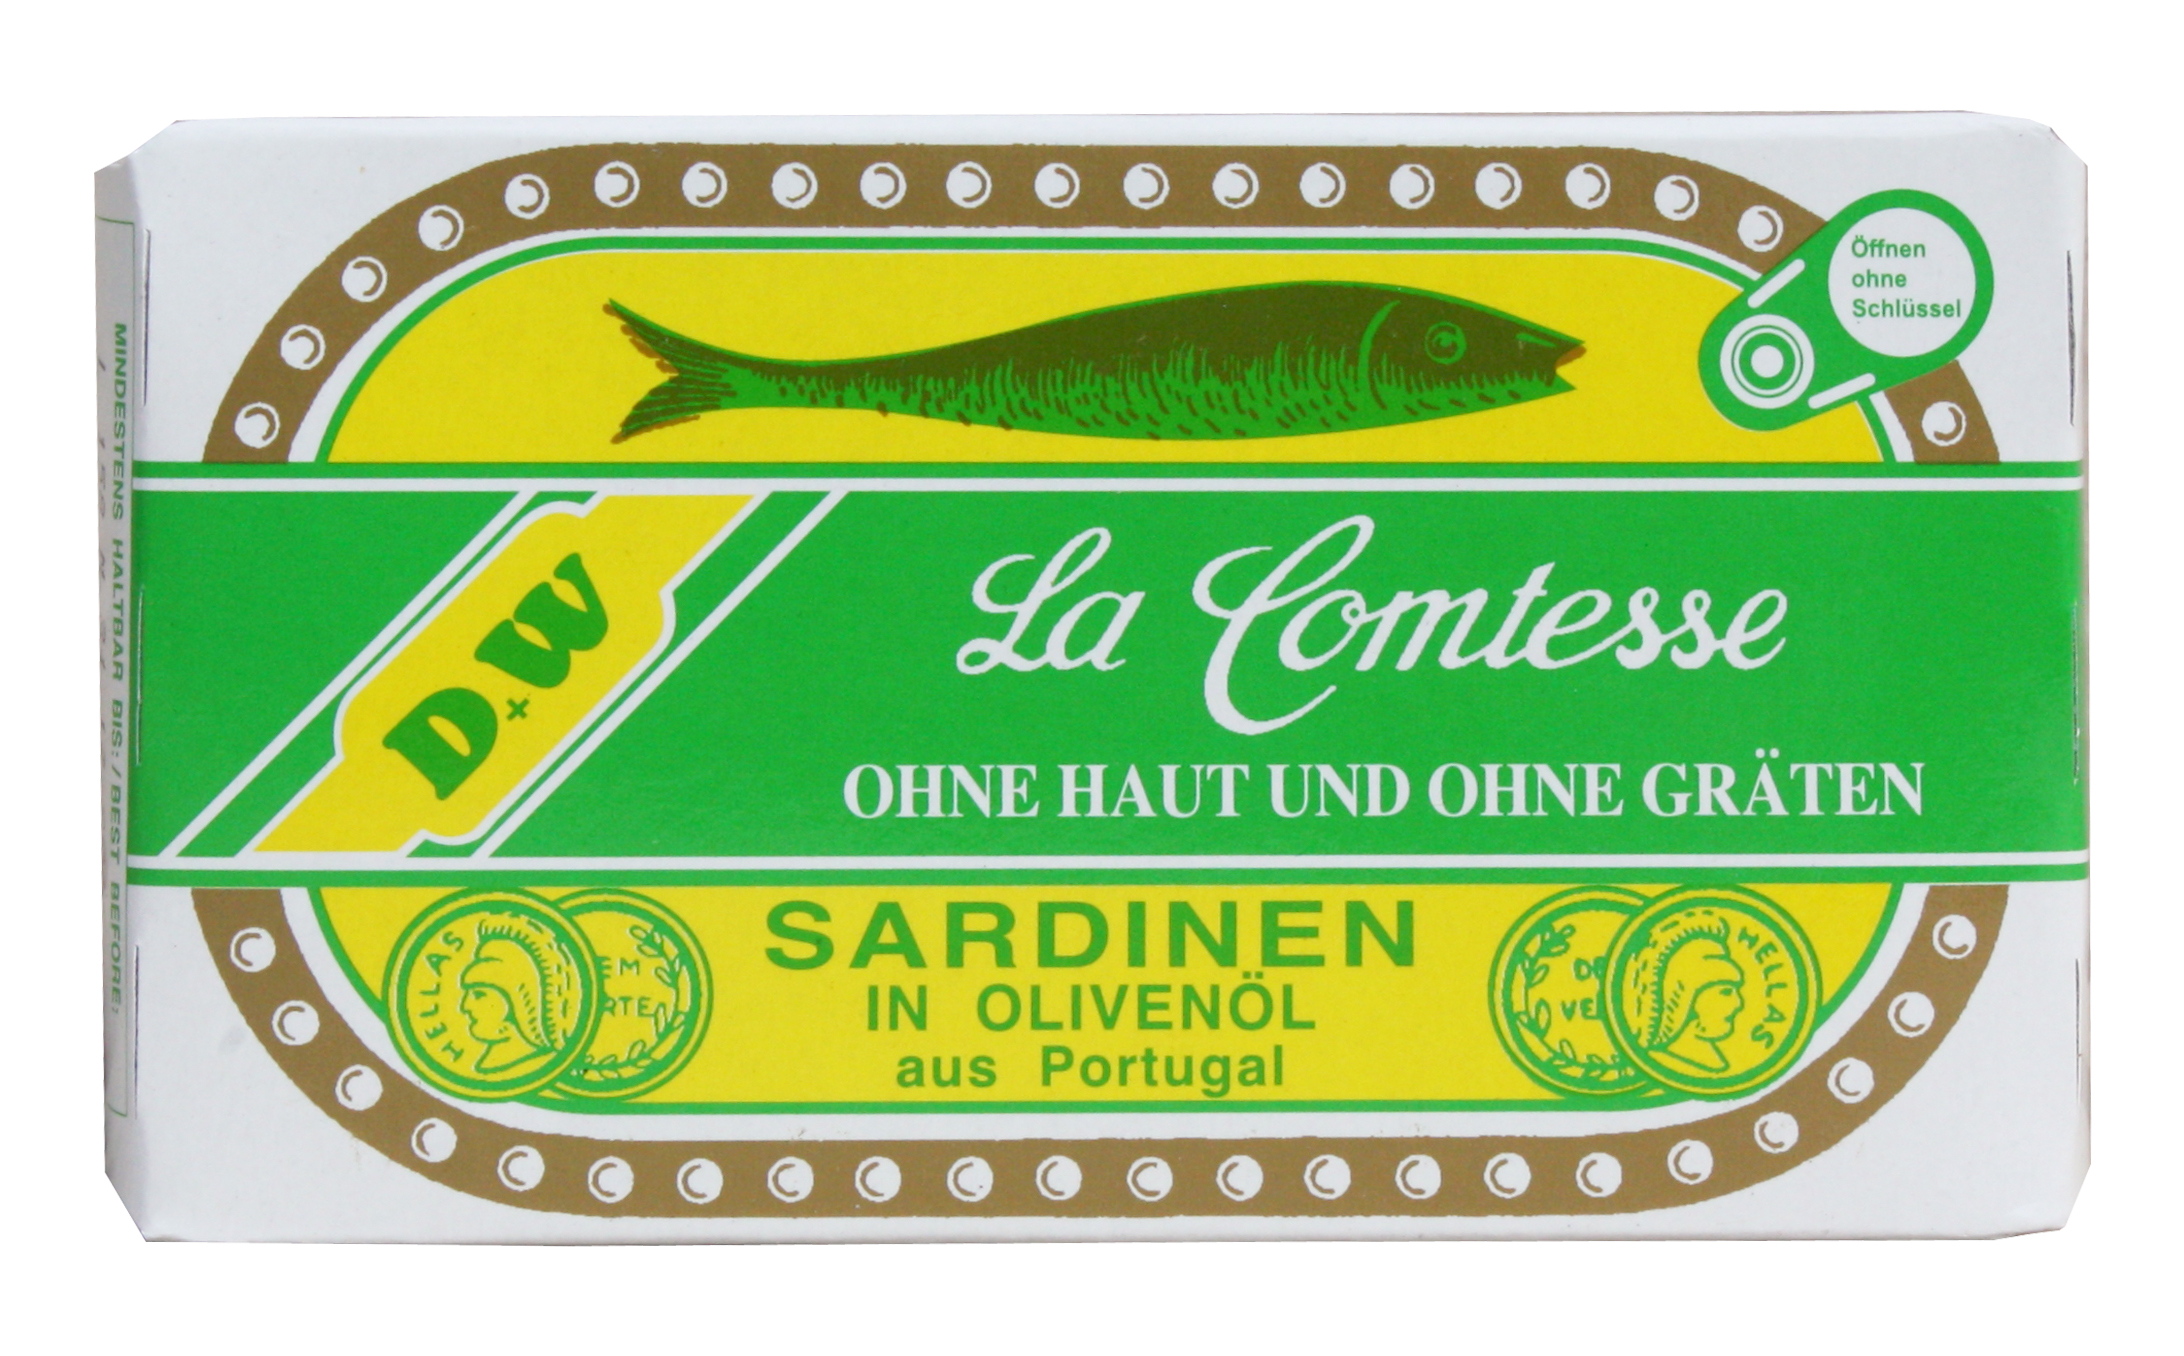 Sardinen in Oliven Öl ohne Haut und ohne Gräten, 125 g